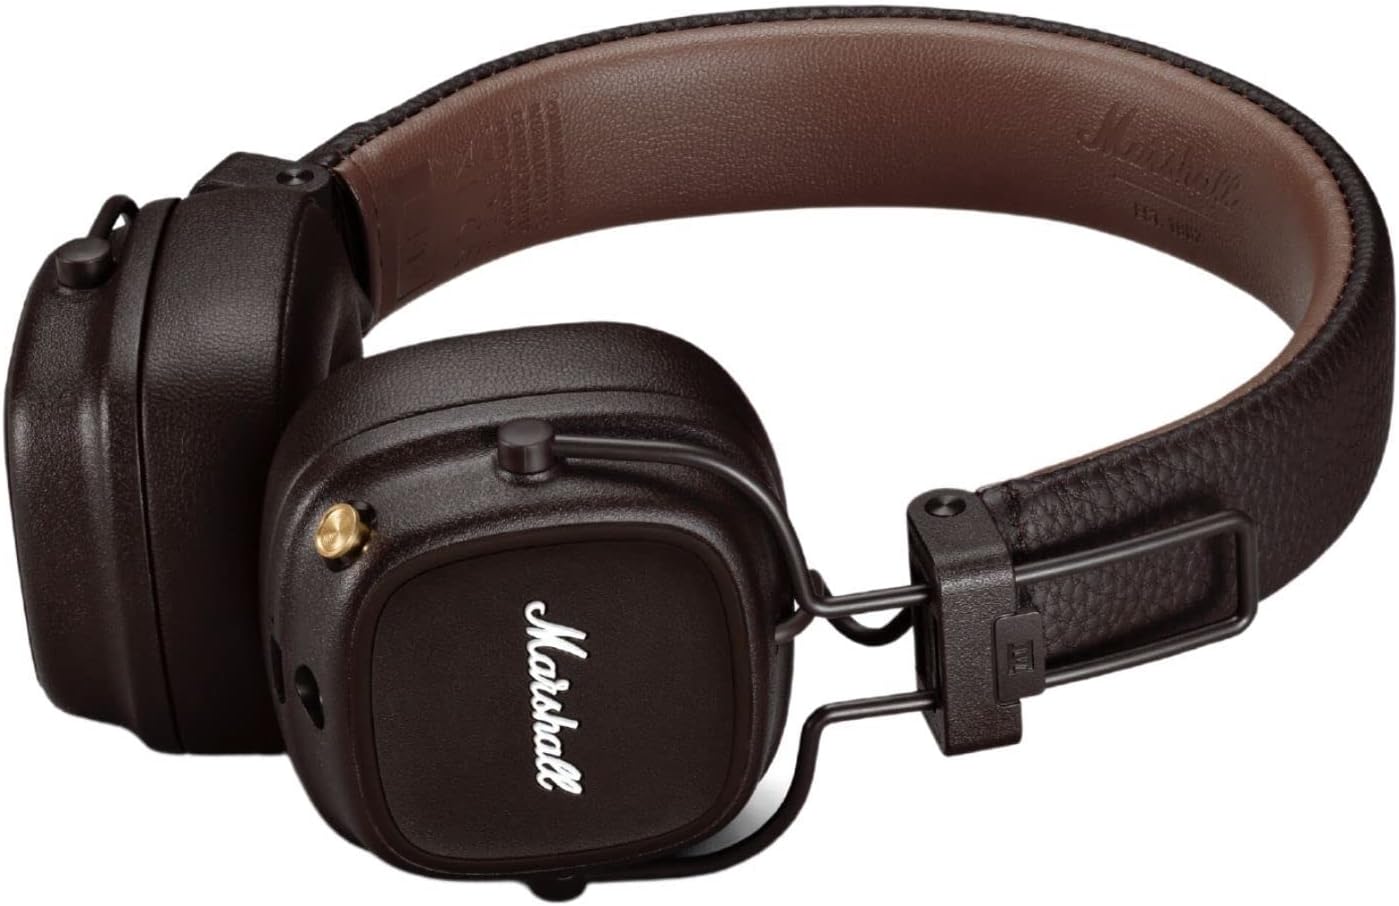 Marshall Major IV On-Ear Wireless Headphones